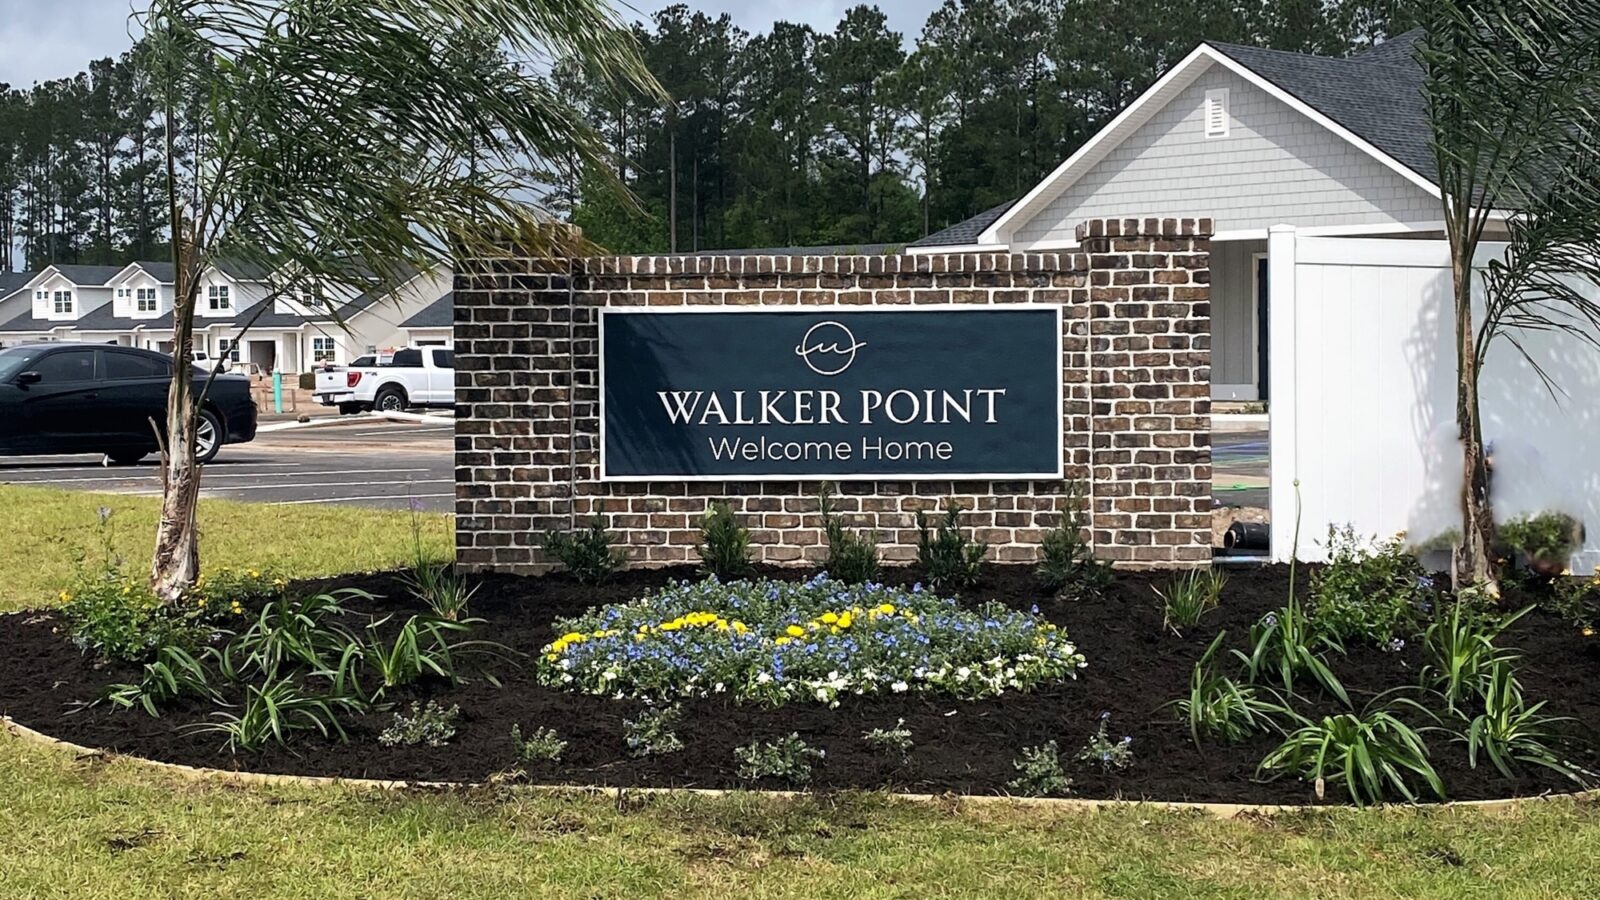 000 Walker Point Welcome Home Sign v2